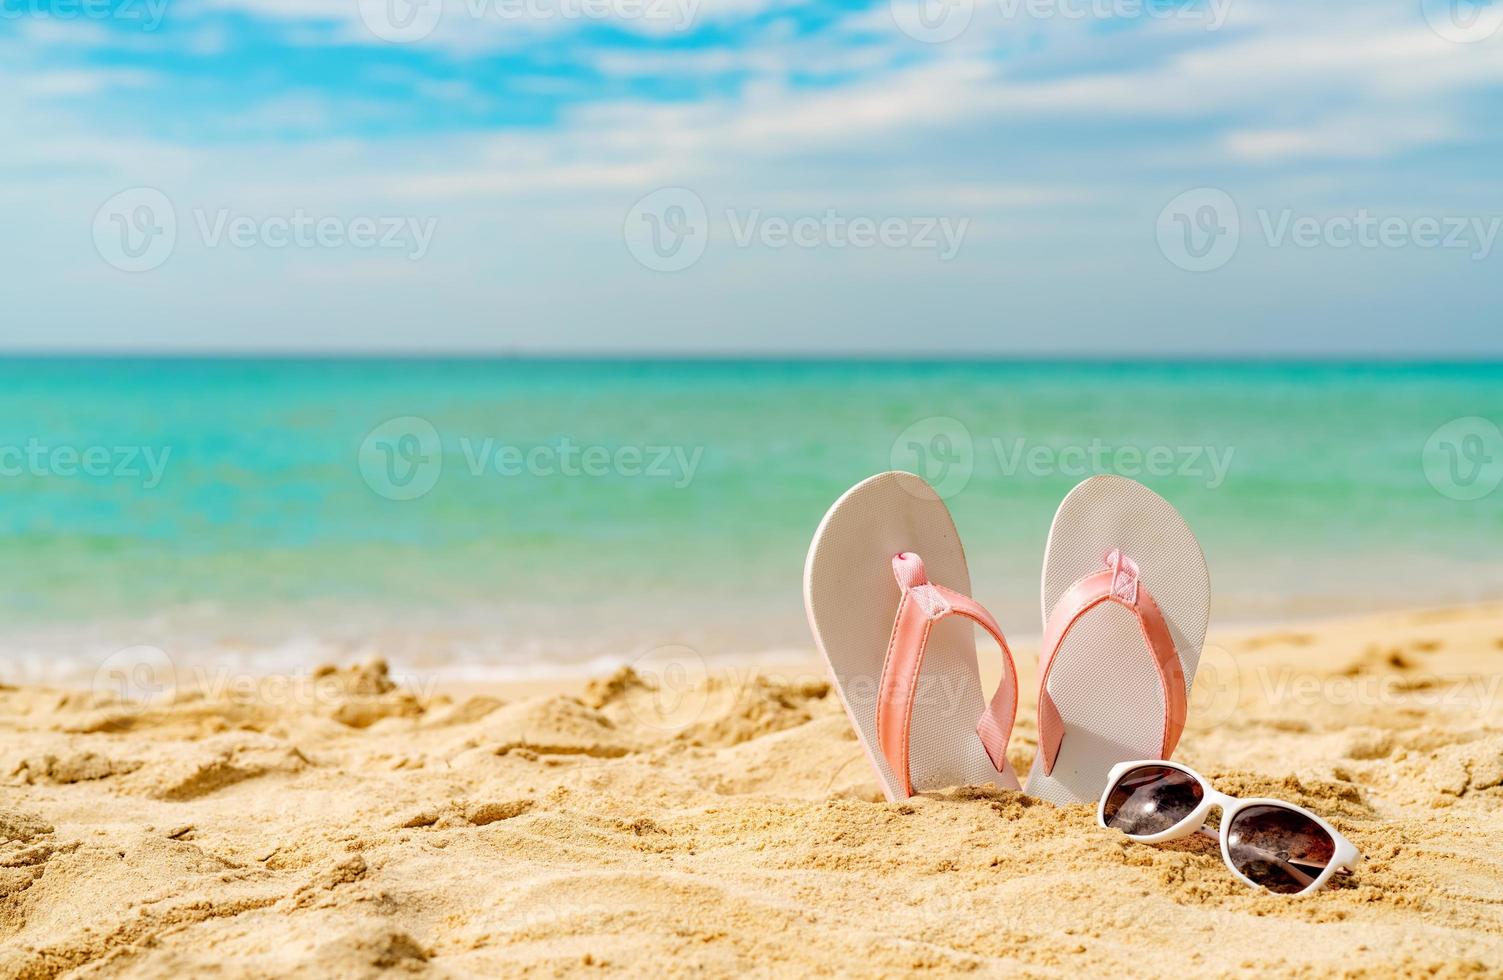 sandales roses et blanches, lunettes de soleil sur la plage de sable au bord de la mer. flipflop et lunettes de style mode décontracté. vacances d'été sur la plage tropicale. voyage de vacances amusant sur la plage de sable. heure d'été. ambiance estivale. photo